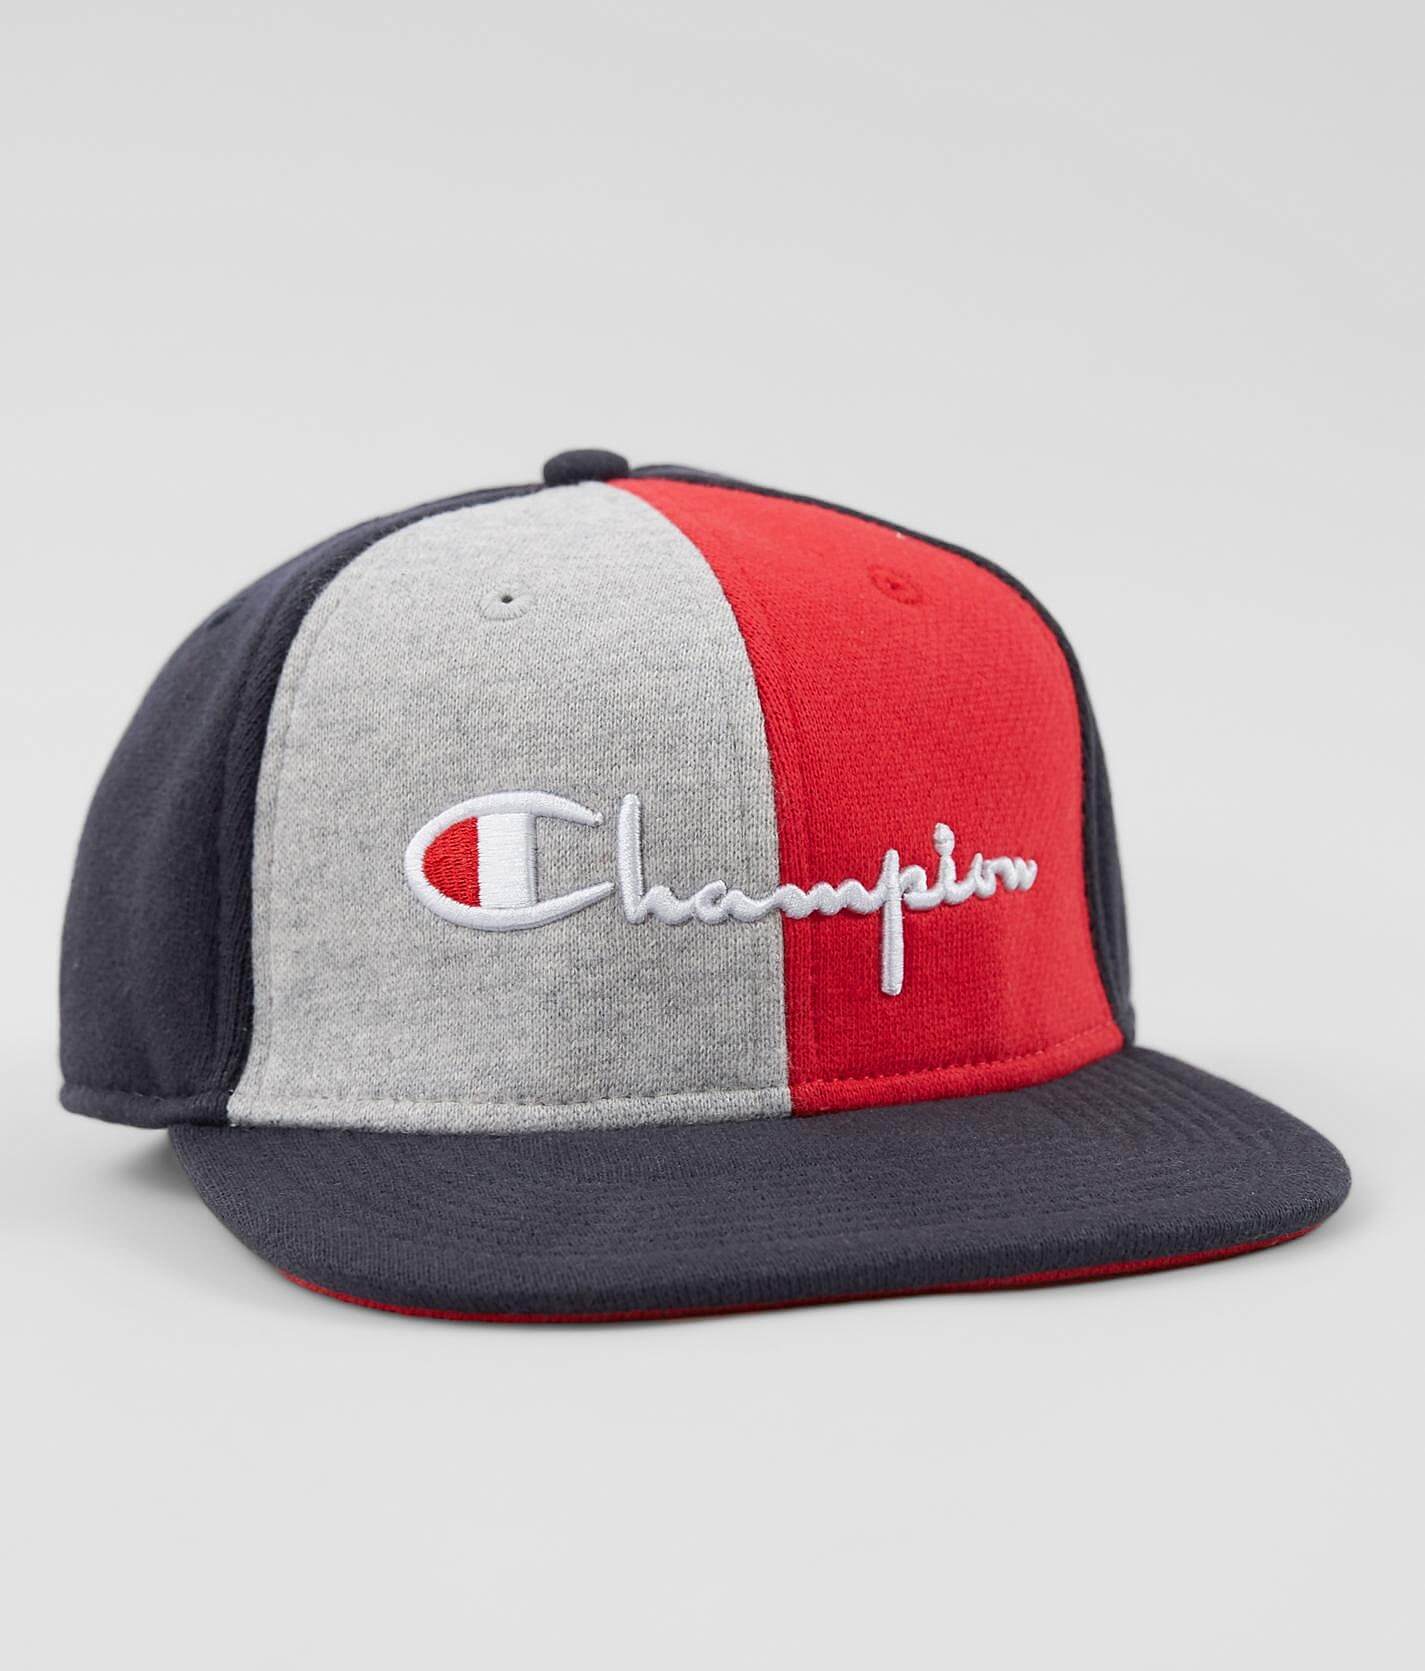 champion maroon hat